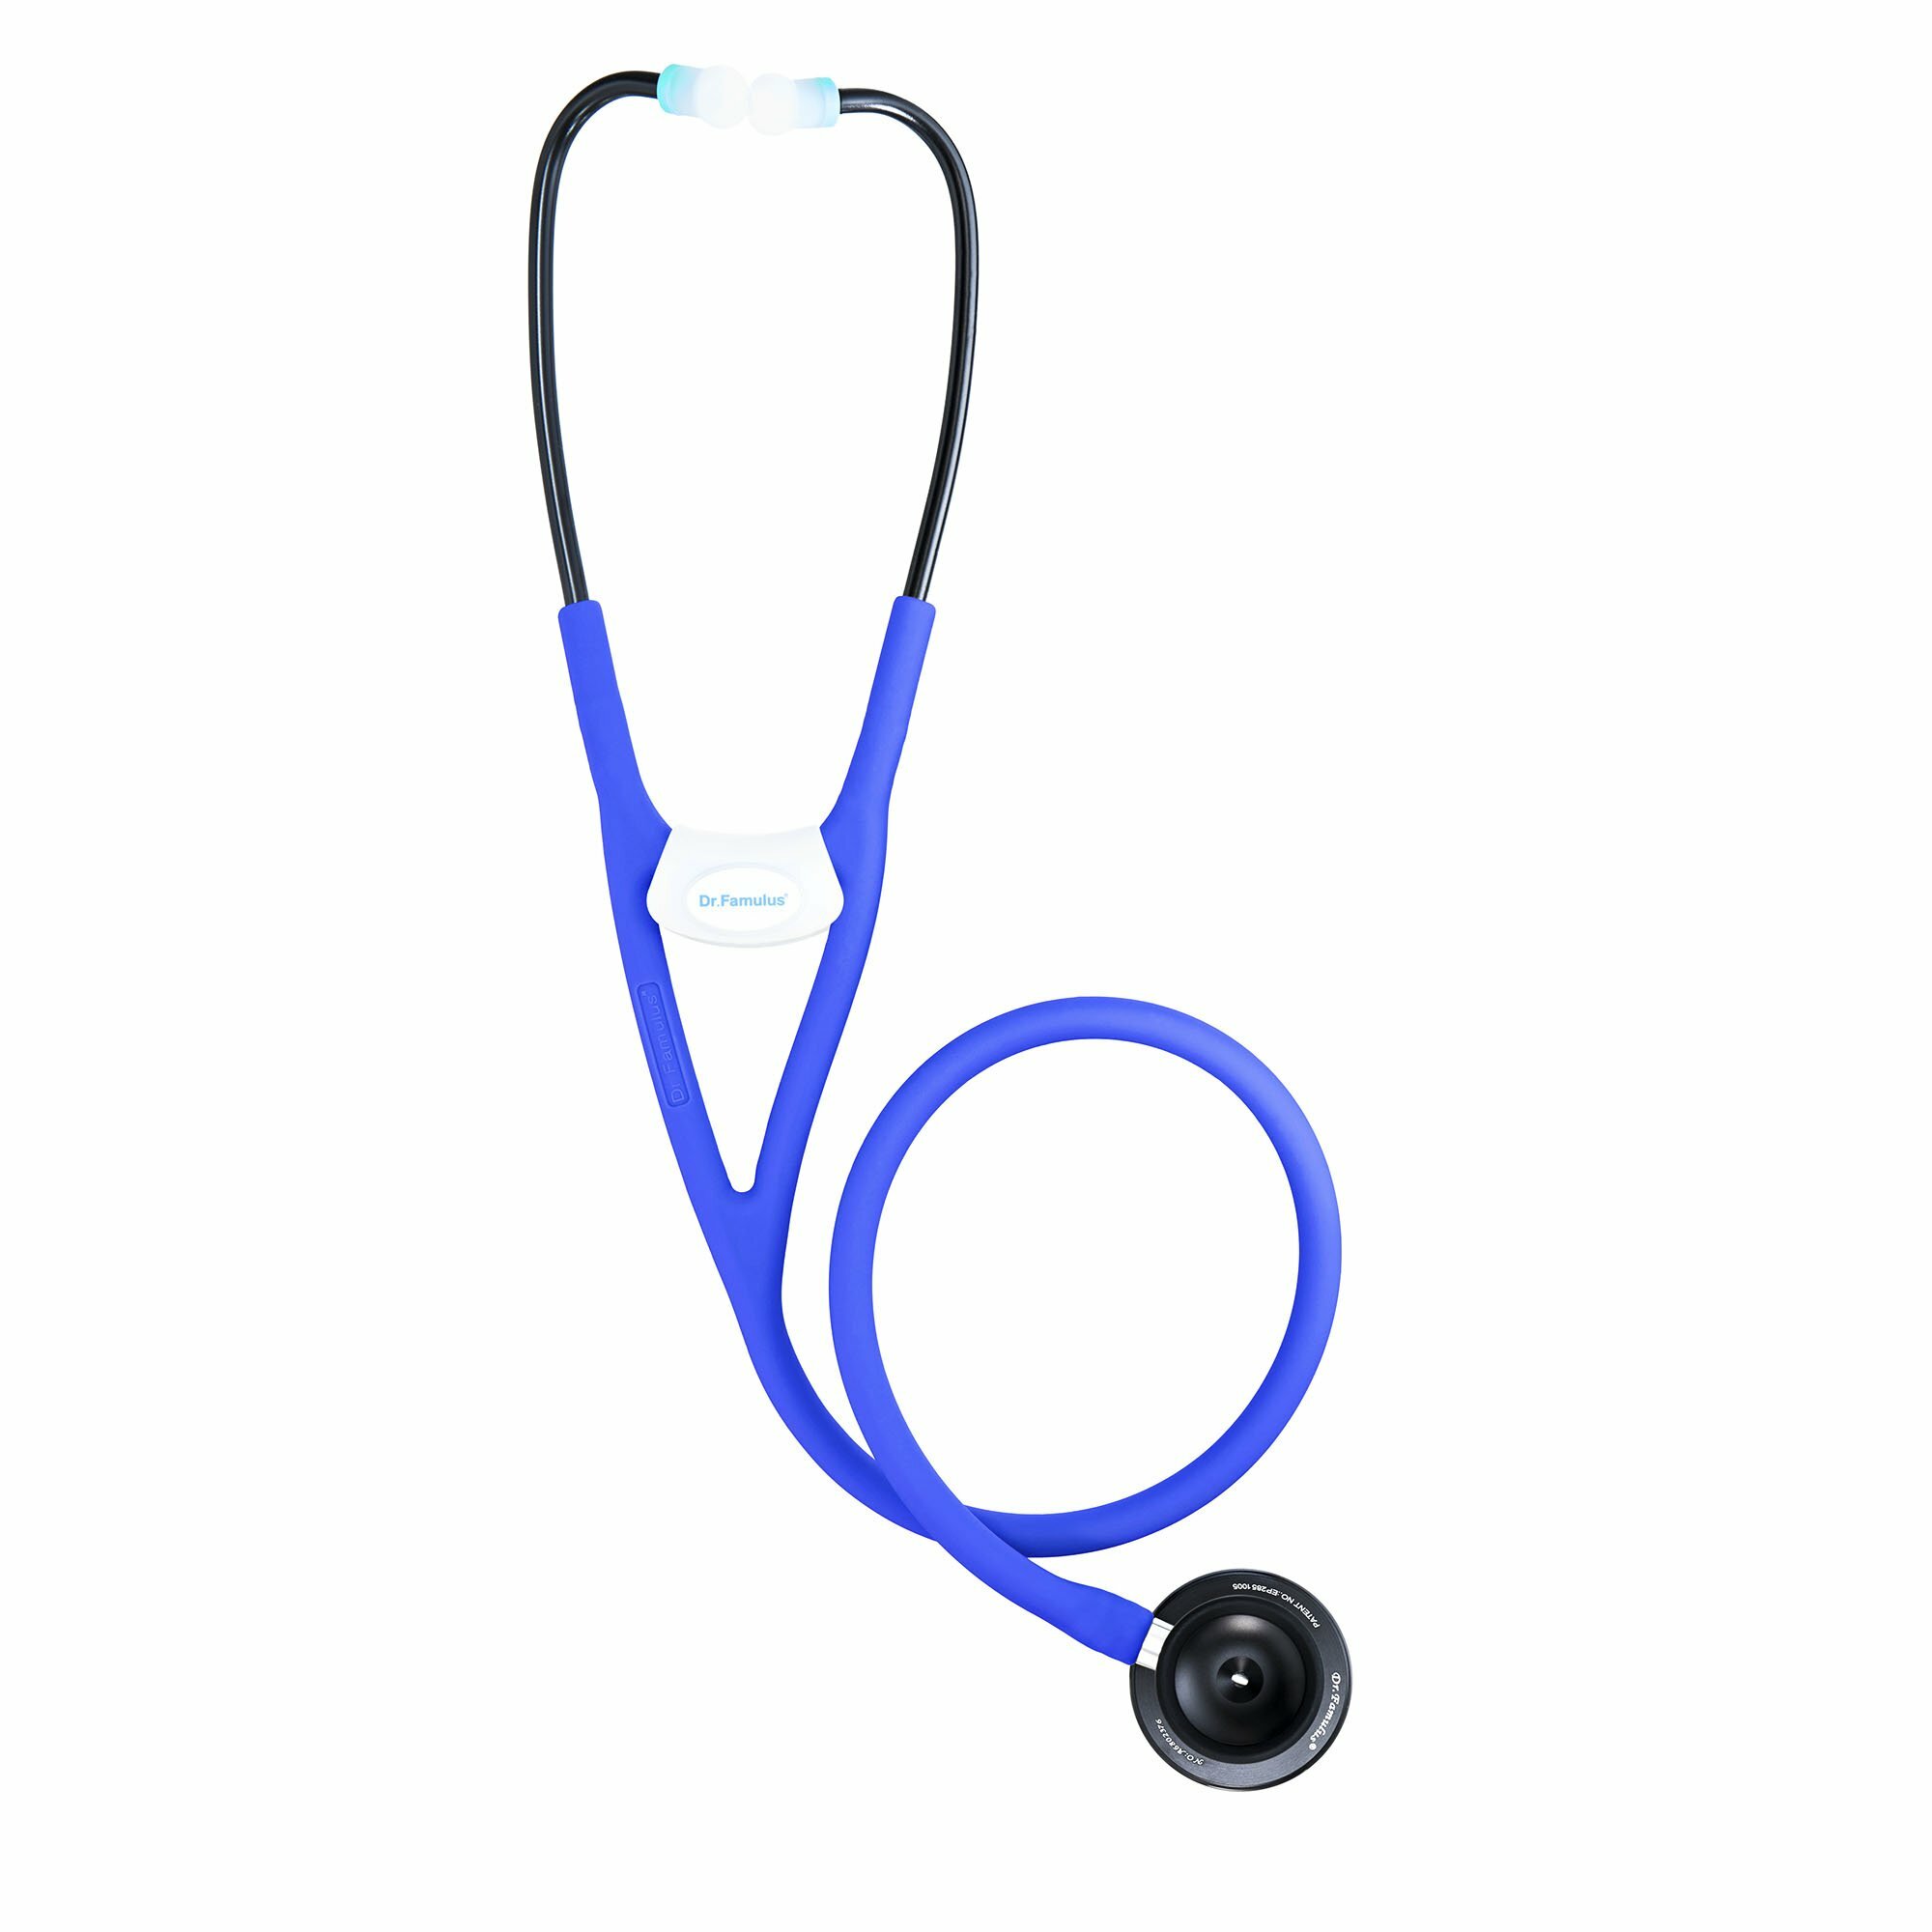 DR.FAMULUS DR 520 Stetoskop novej generácie dvojstranný,fialový